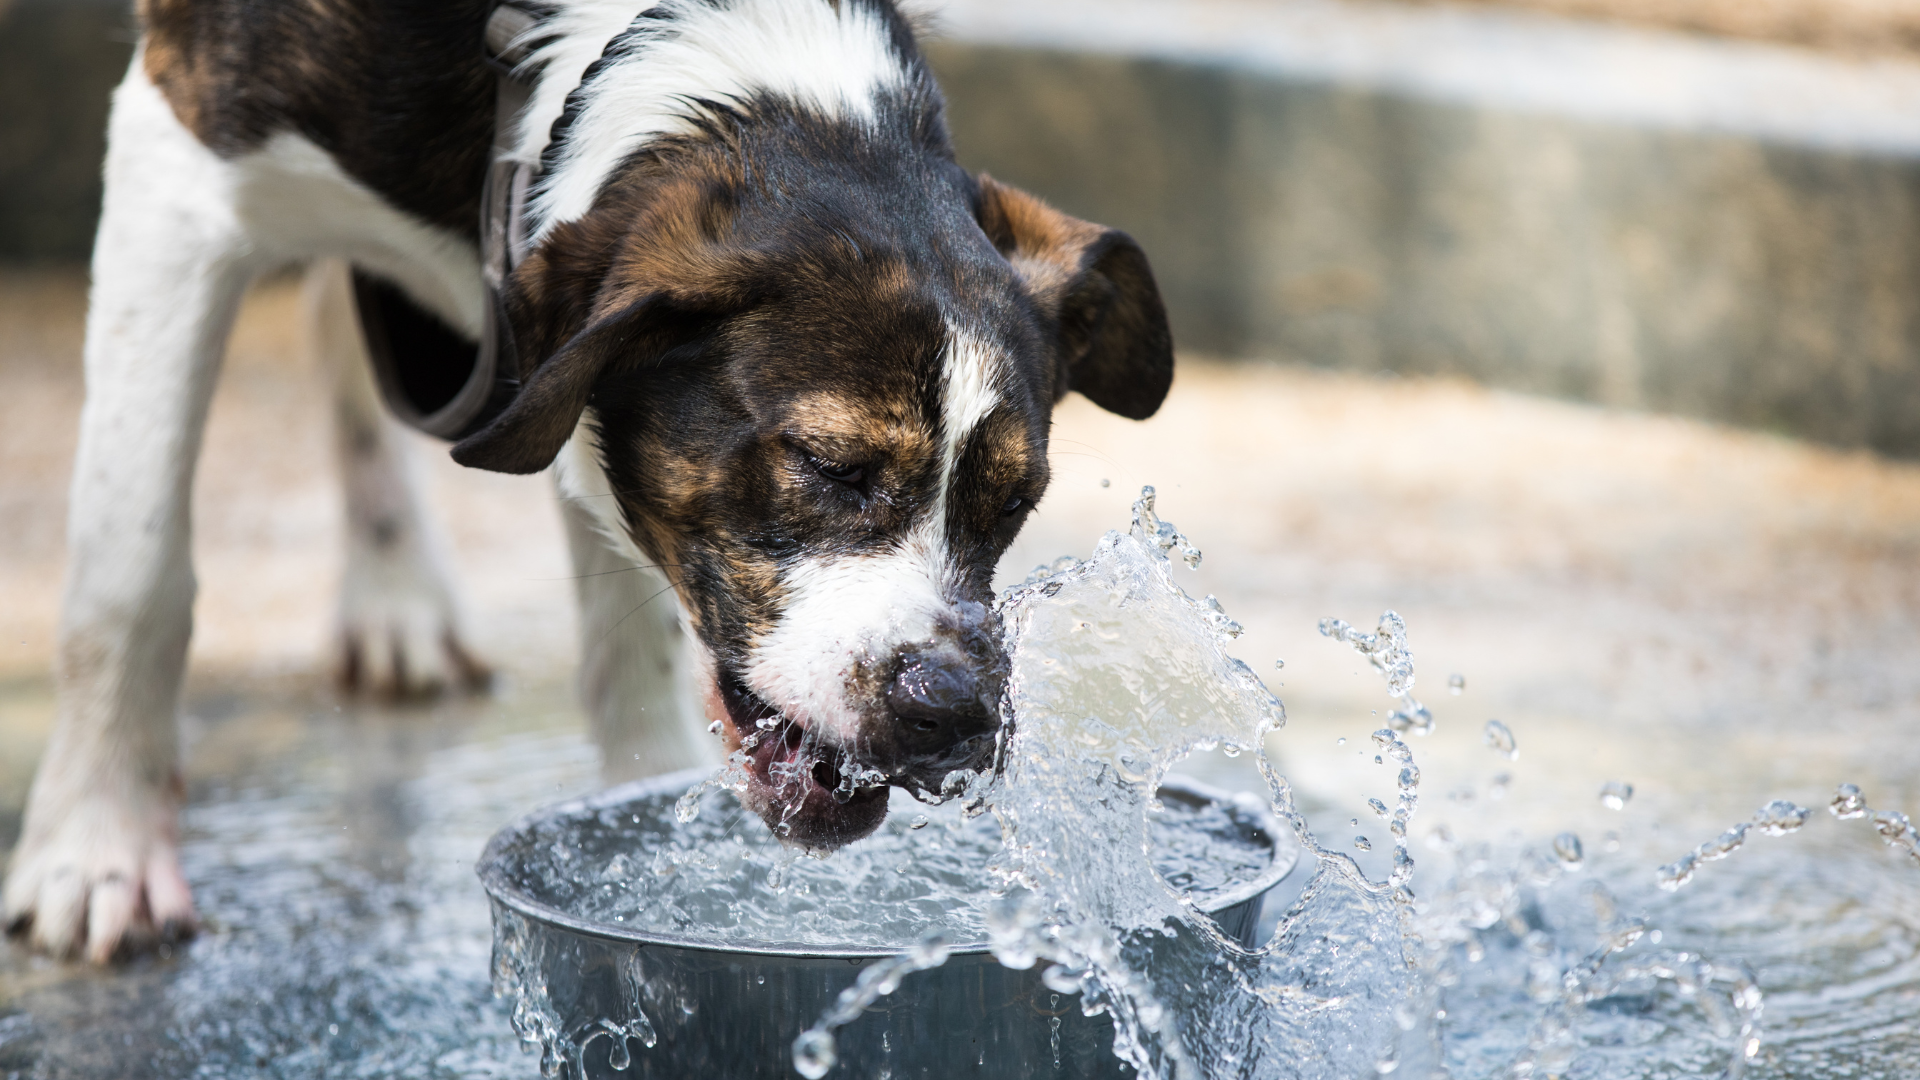 Dog drinking rainwater